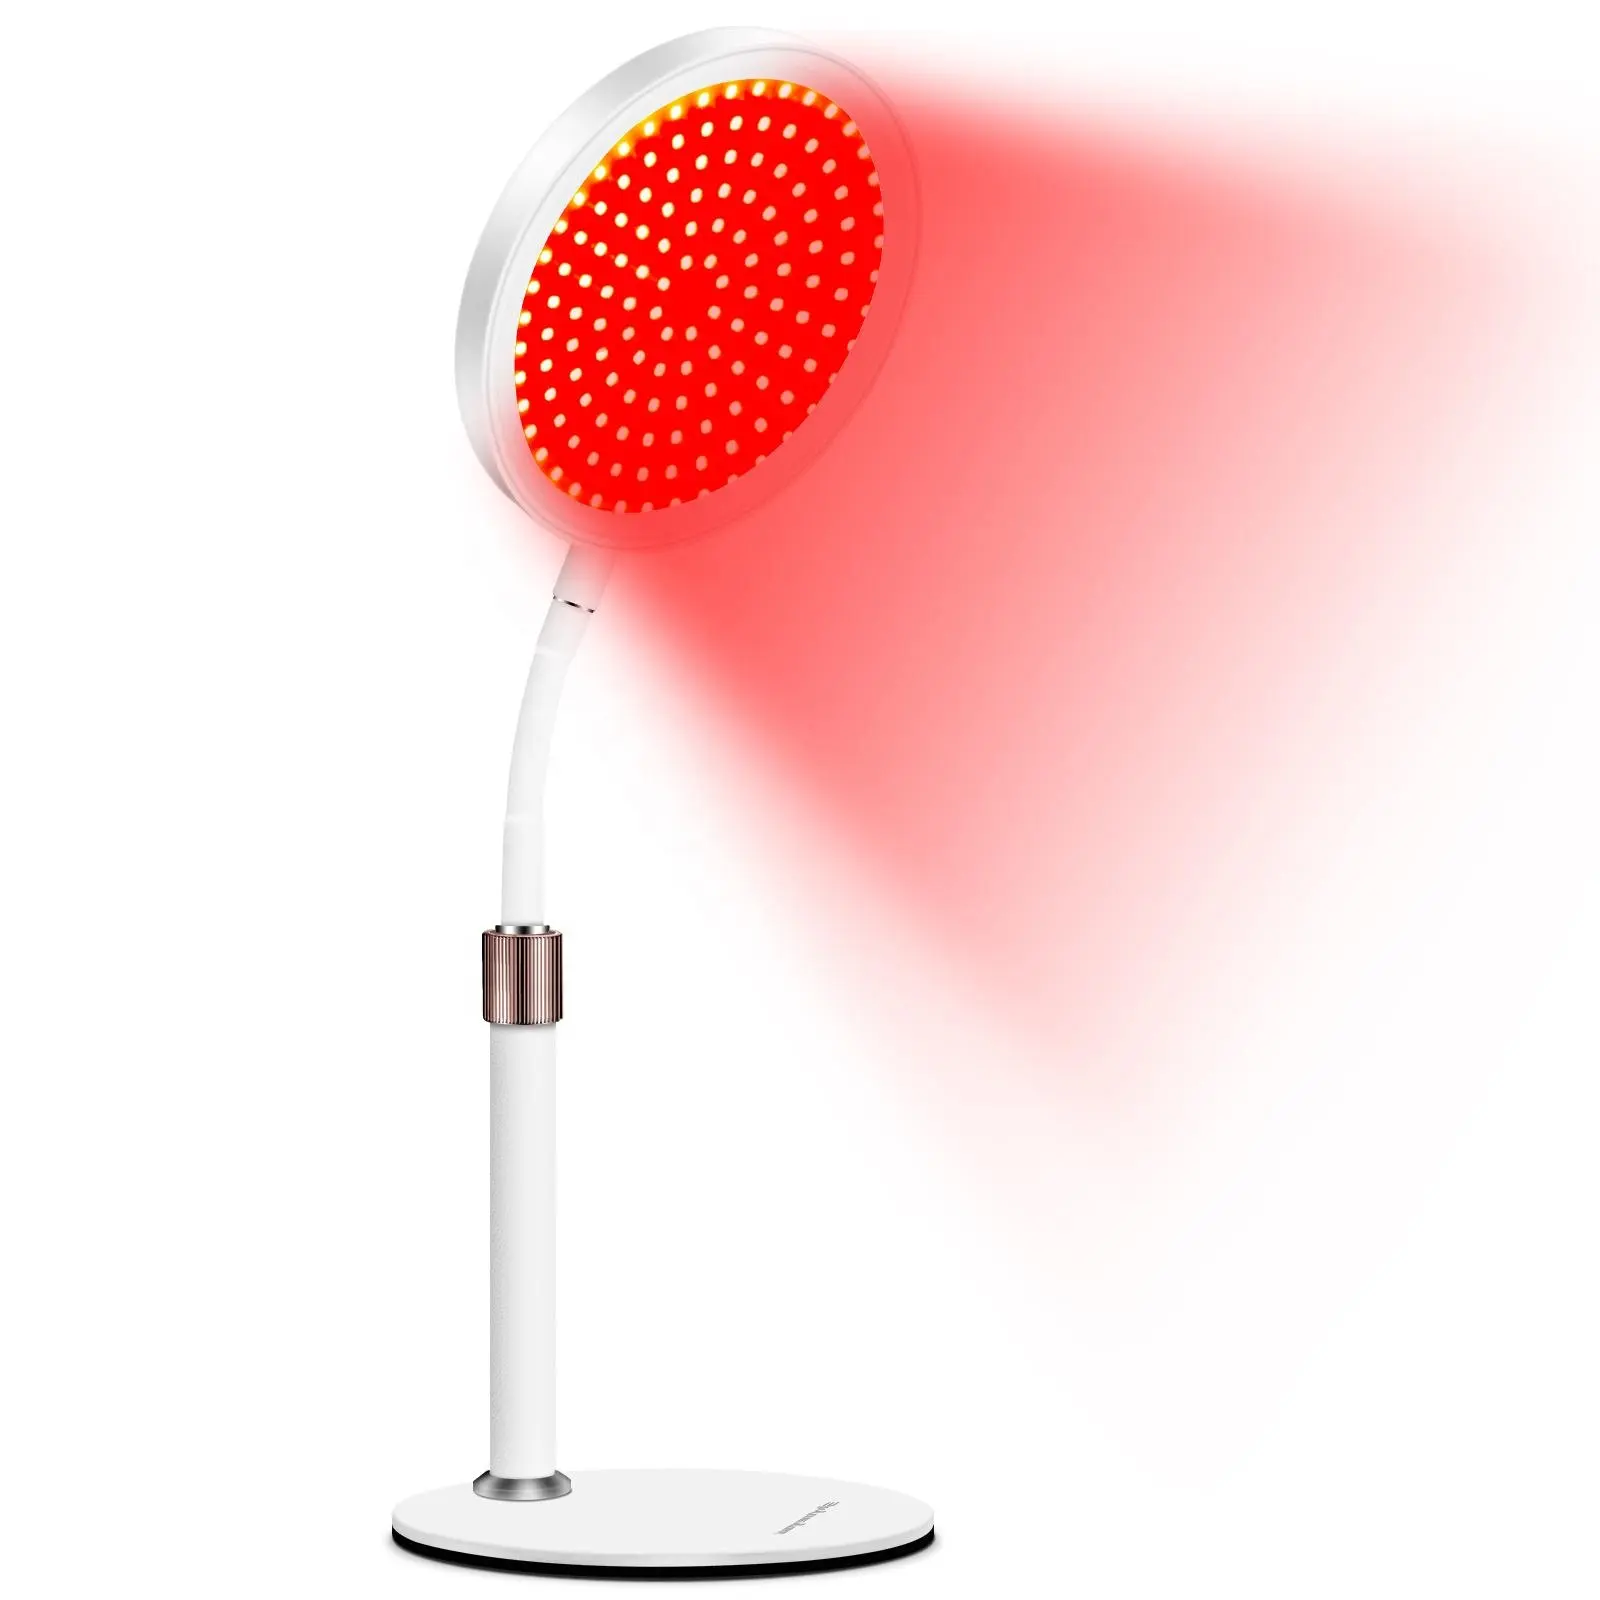 Rood Licht Therapie Met Timing En Verstelbare Standaard, Voor Het Gezicht, Huidverzorging, Thuis Led Therapie Lamp 140Leds